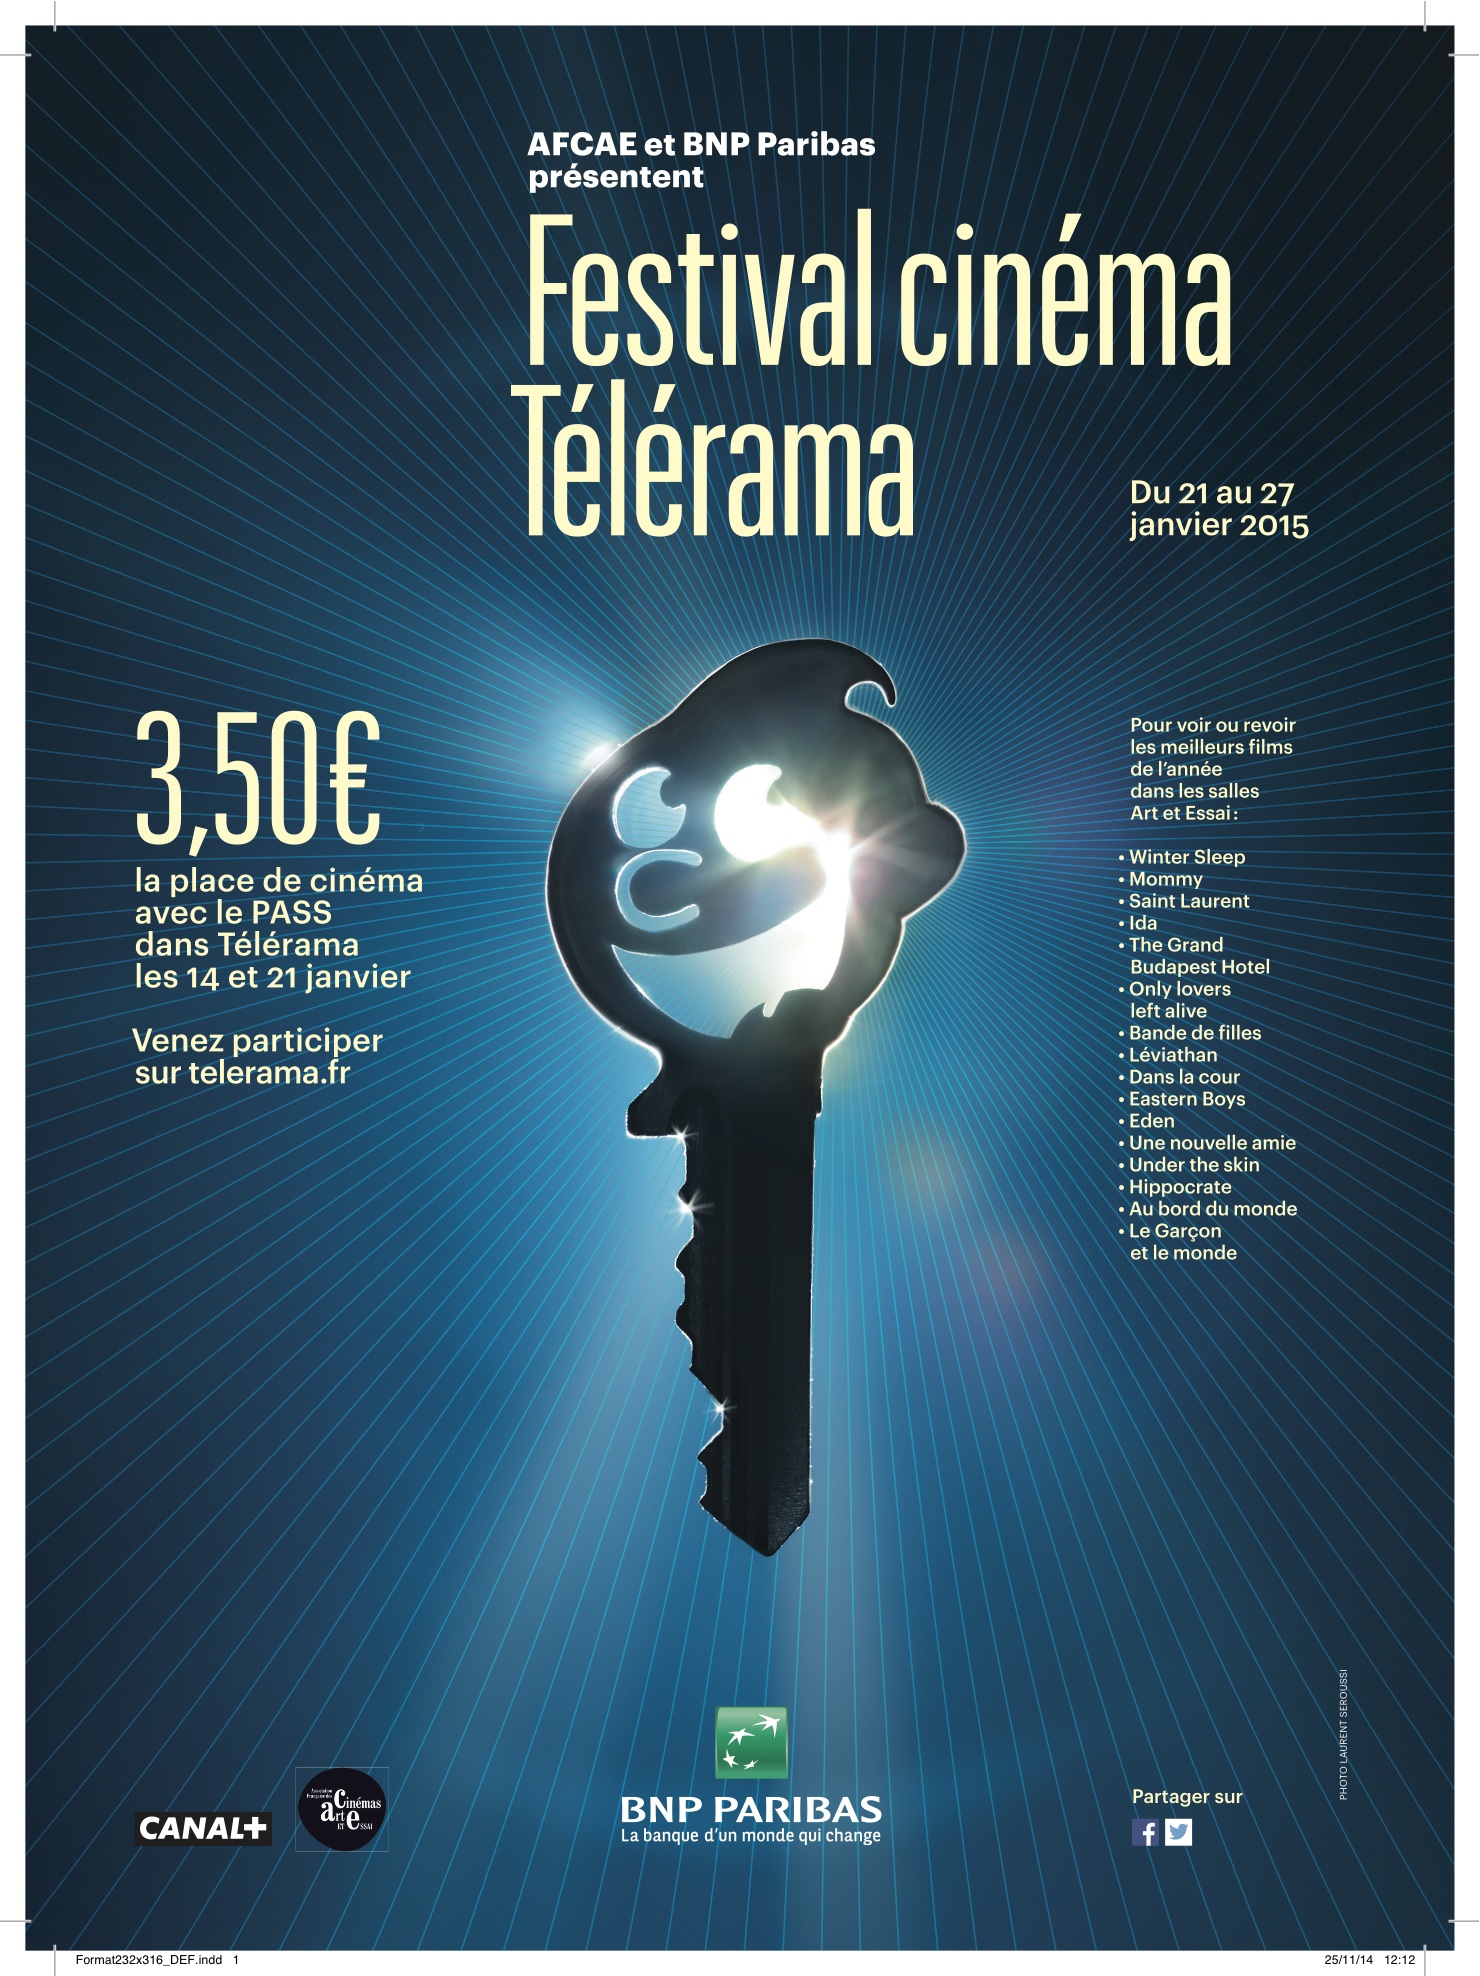 Festival cinéma Télérama : les meilleurs films de l&rsquo;année 2014